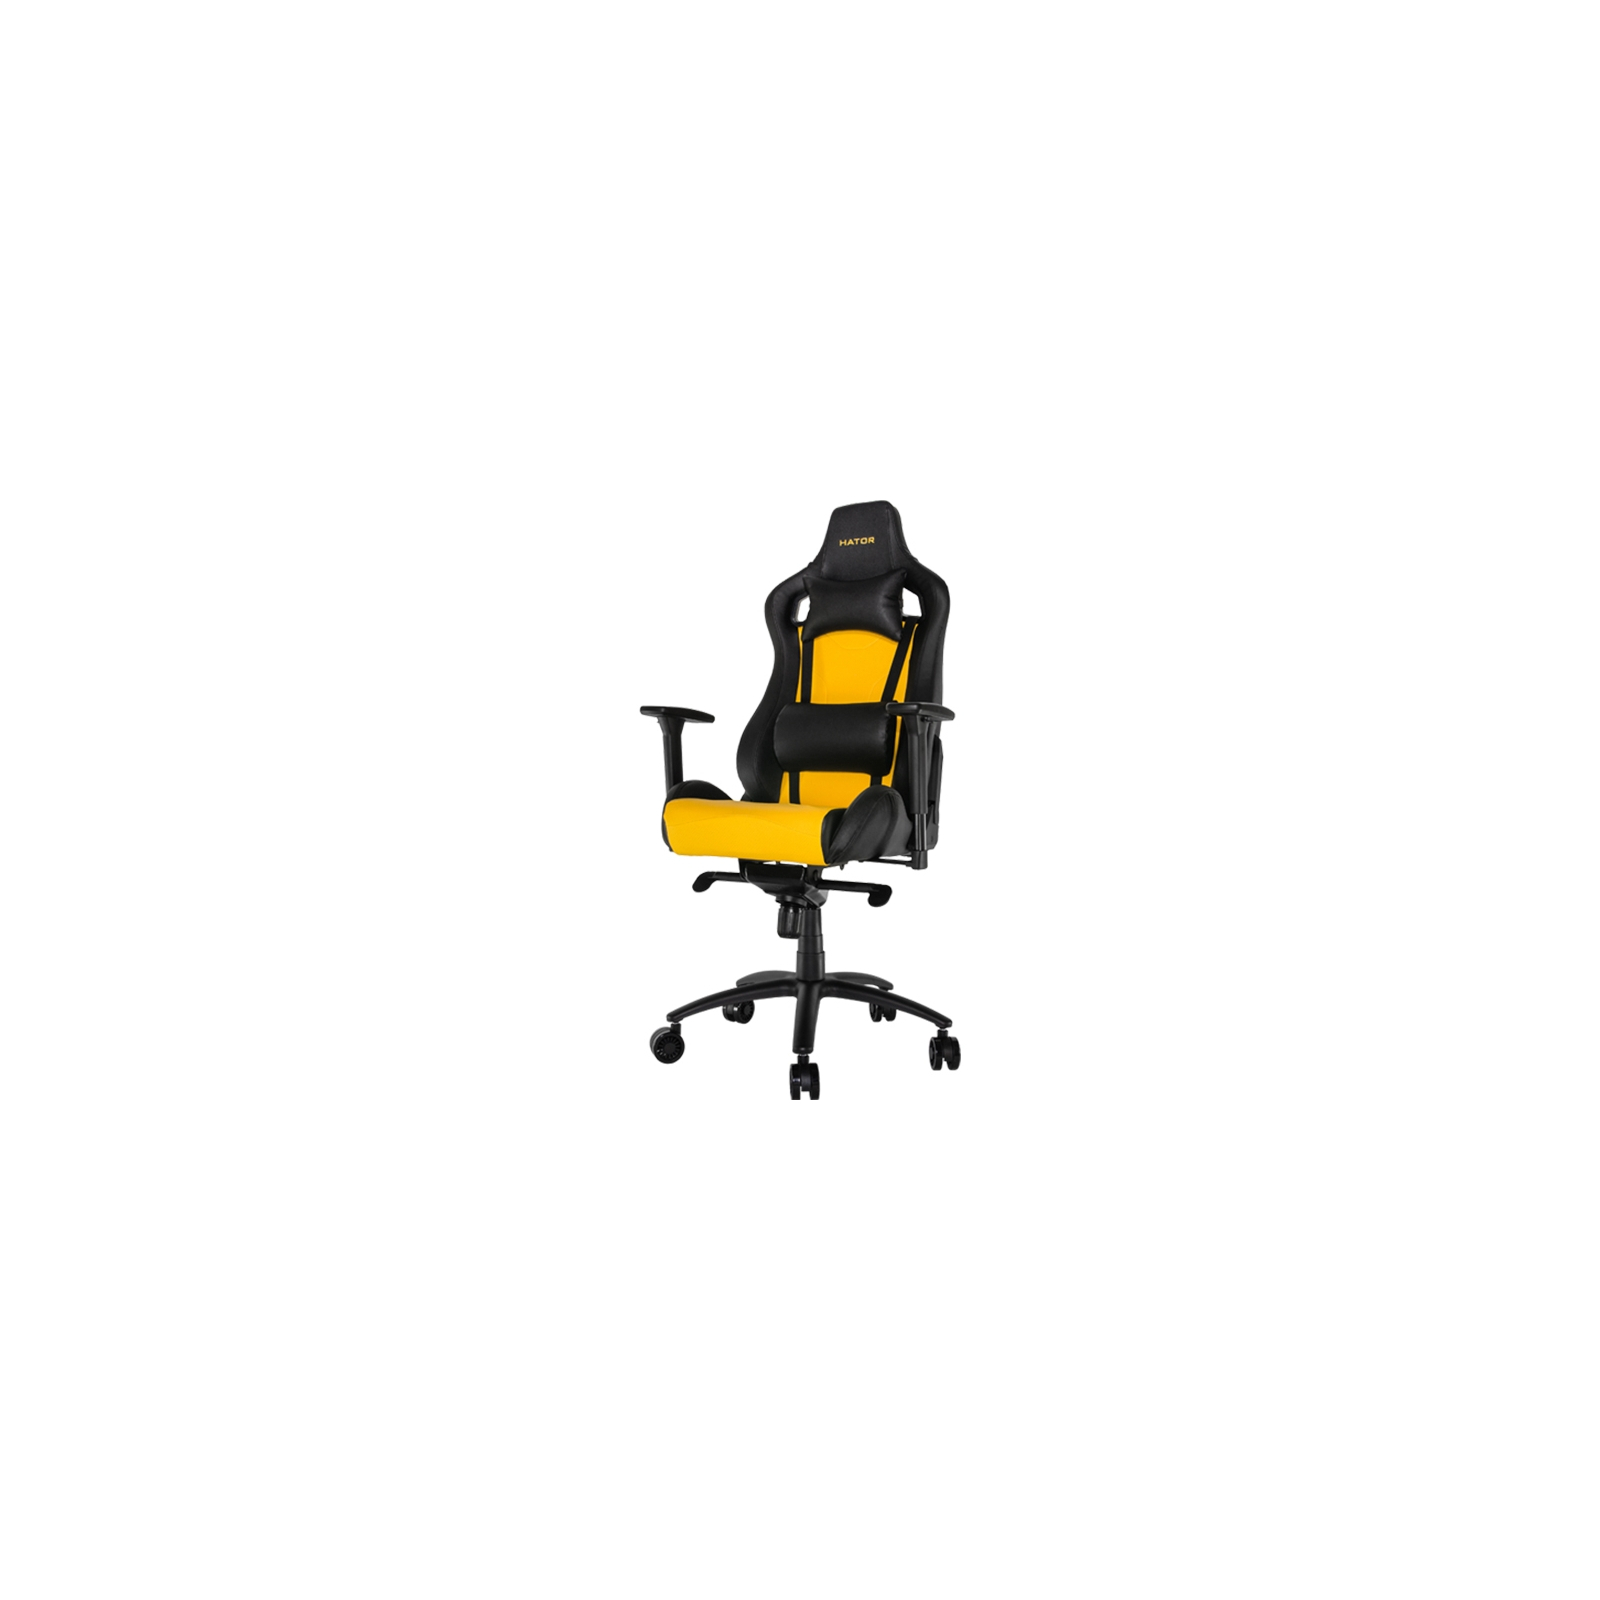 Крісло ігрове Hator Apex Black/Yellow (HTC-971)